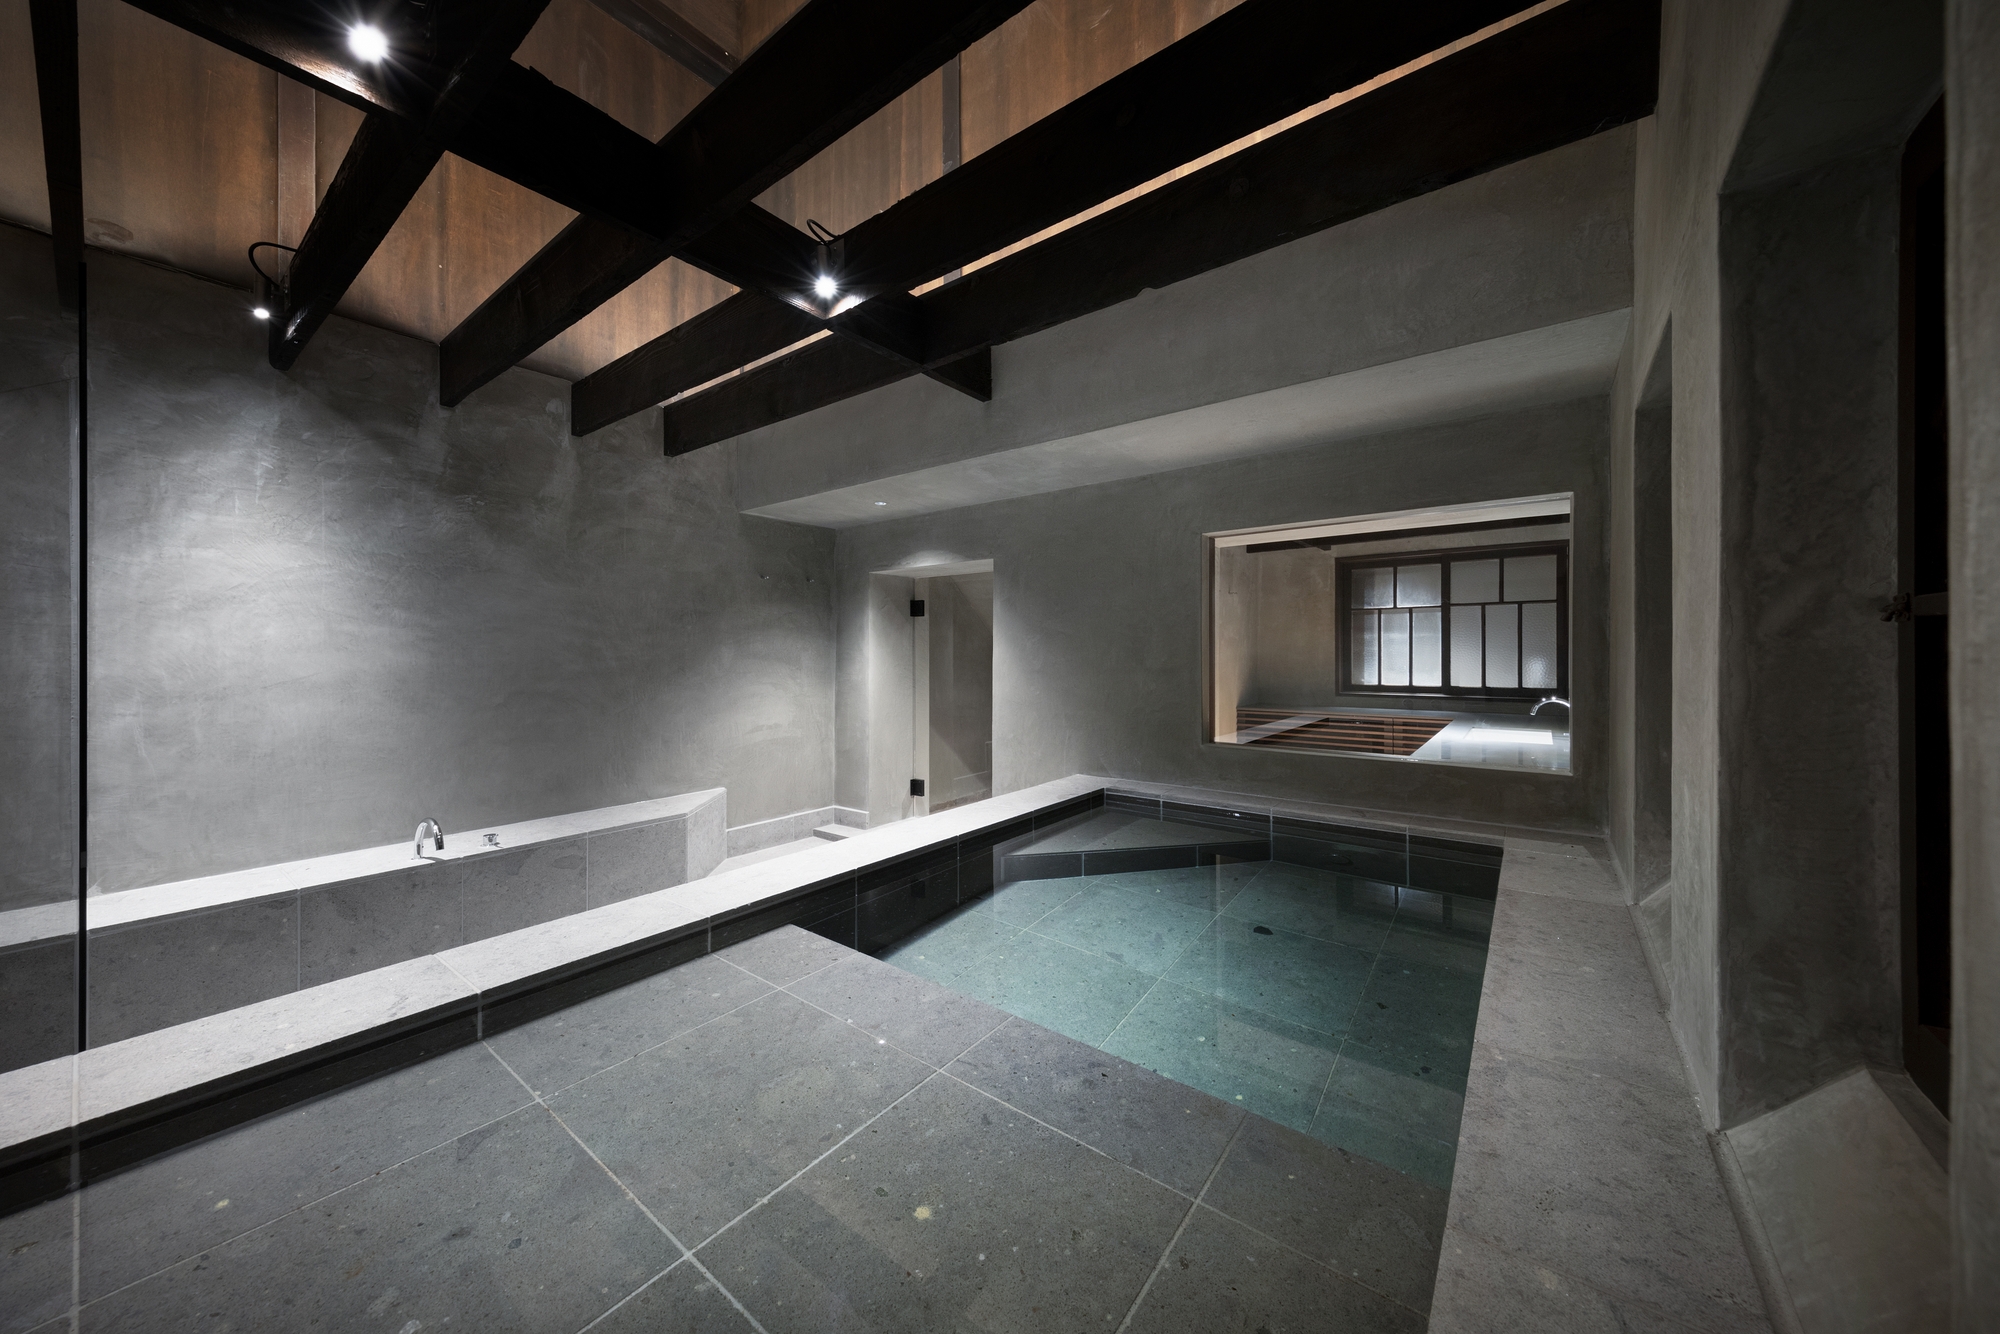 图片[12]|Hayama Kachitei酒店|ART-Arrakis | 建筑室内设计的创新与灵感